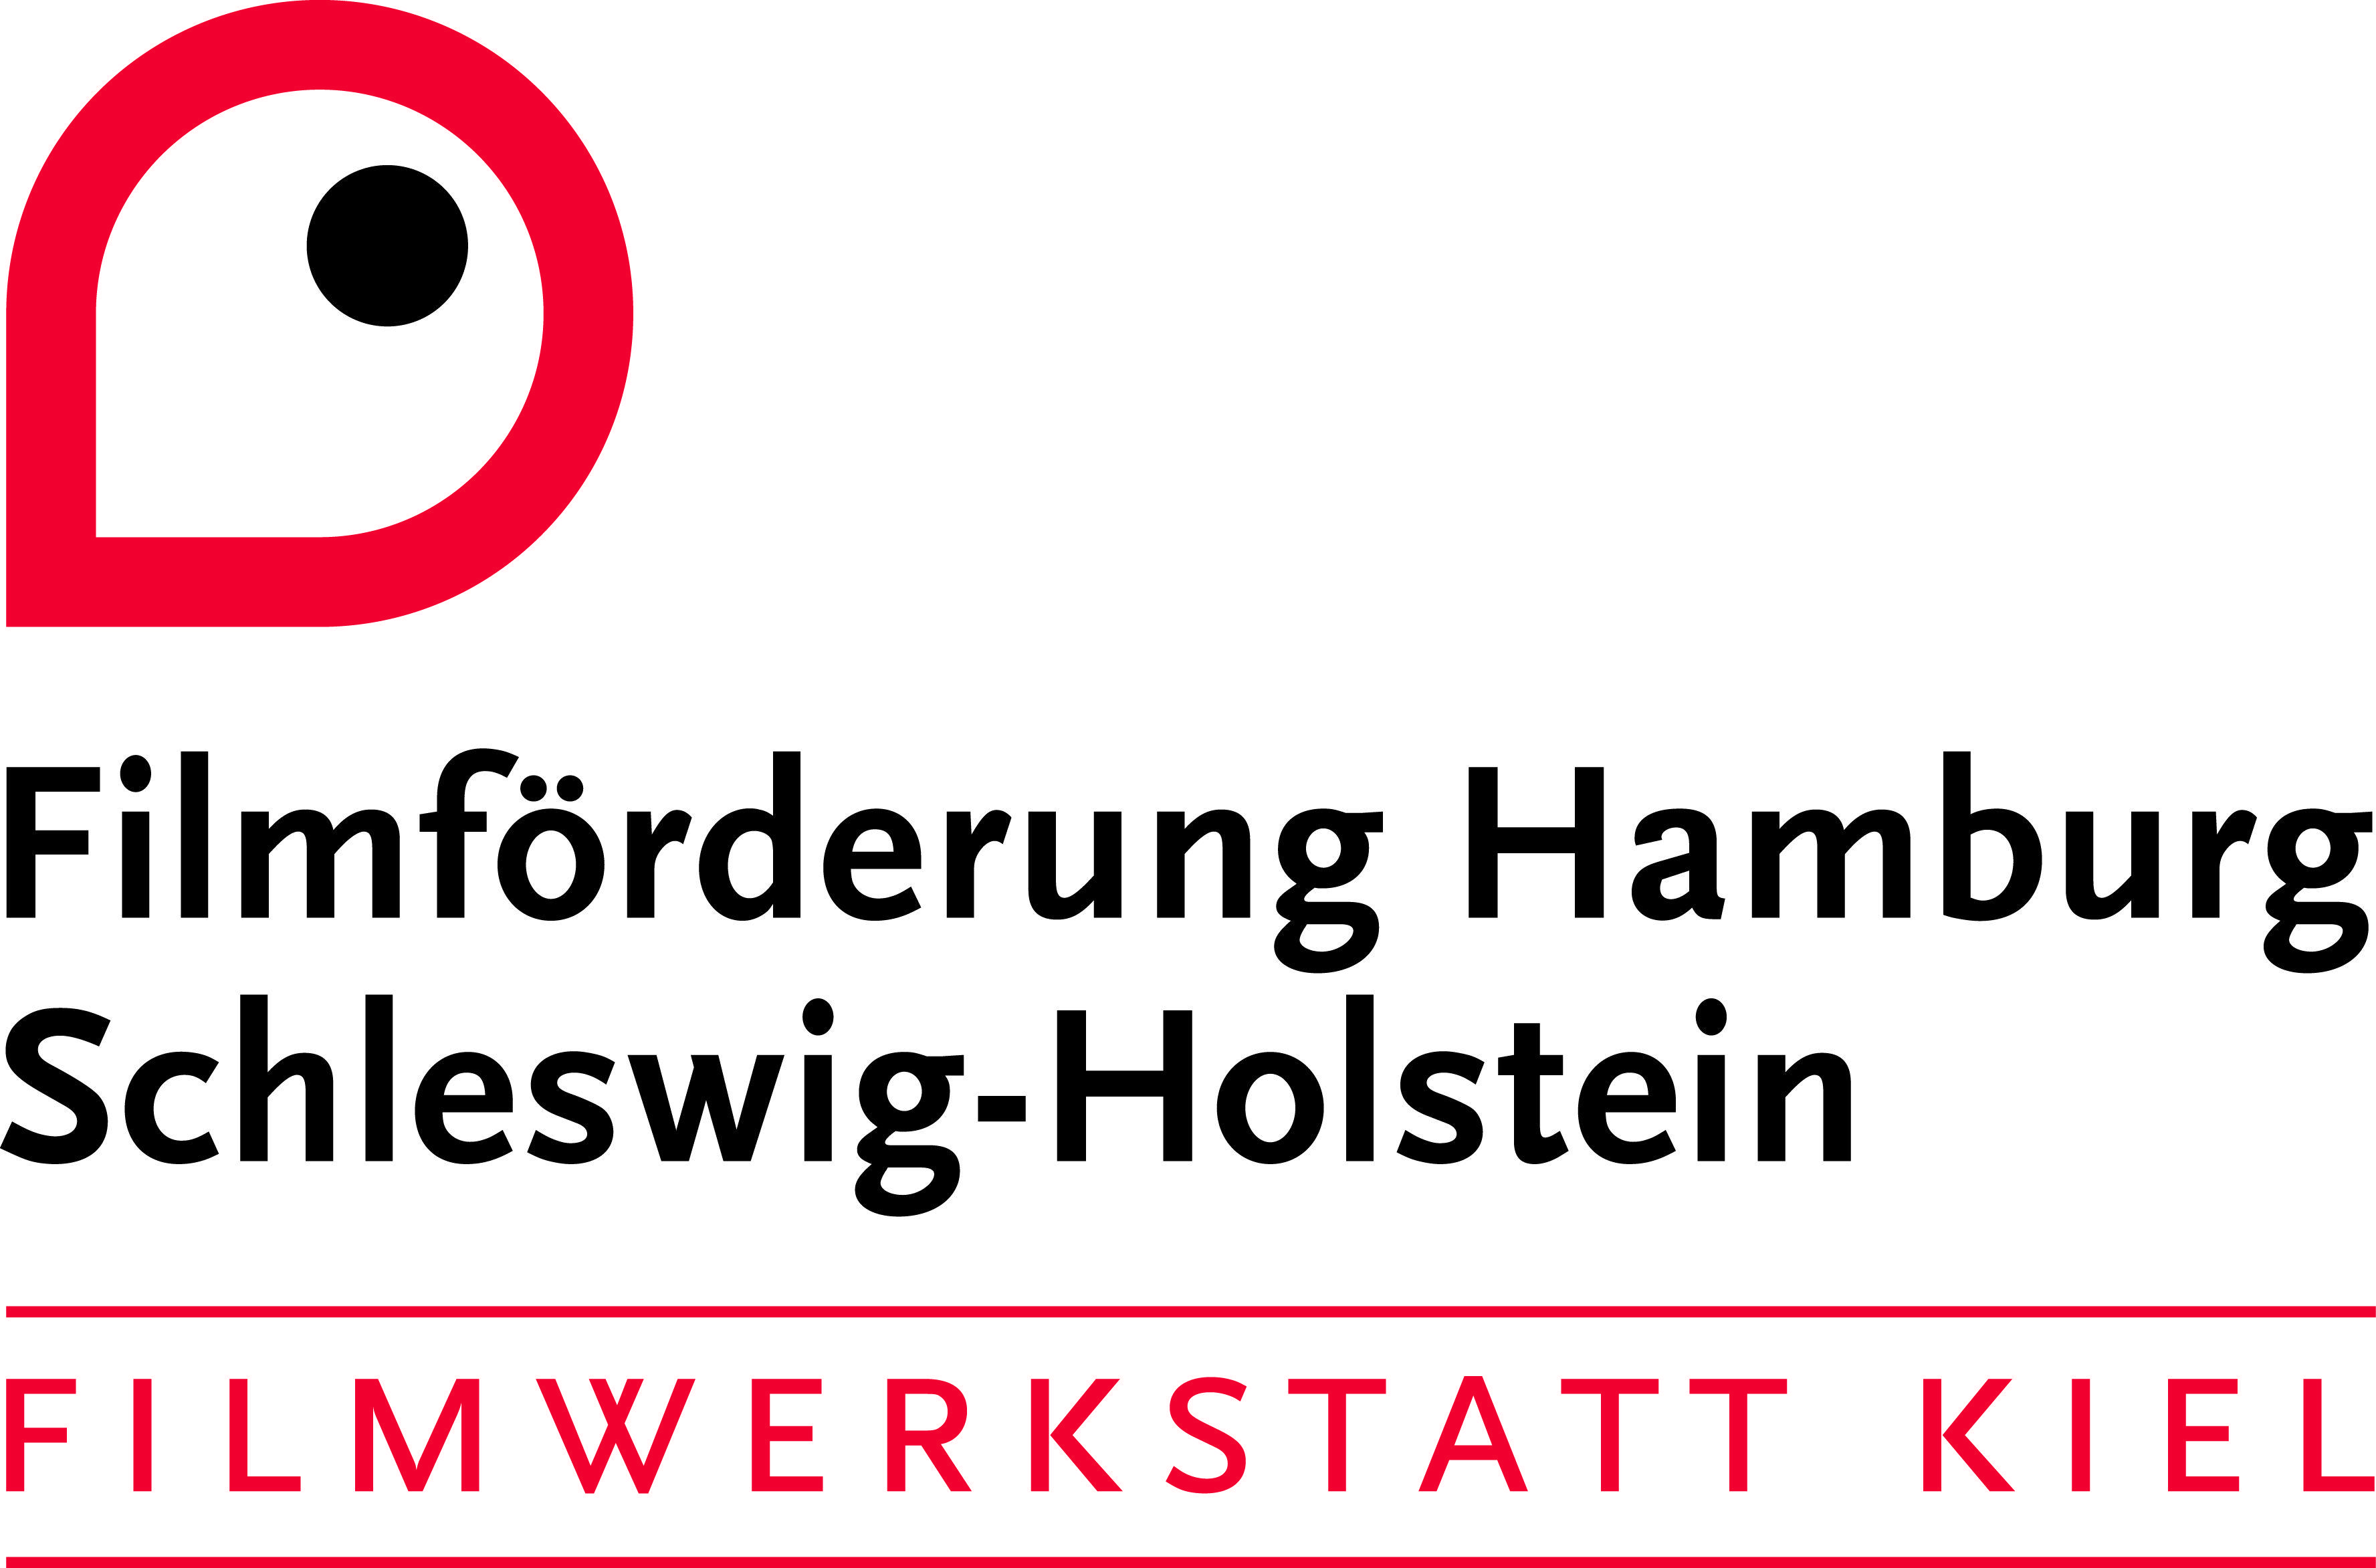 Kiel Logo - Downloads. Filmförderung Hamburg Schleswig Holstein